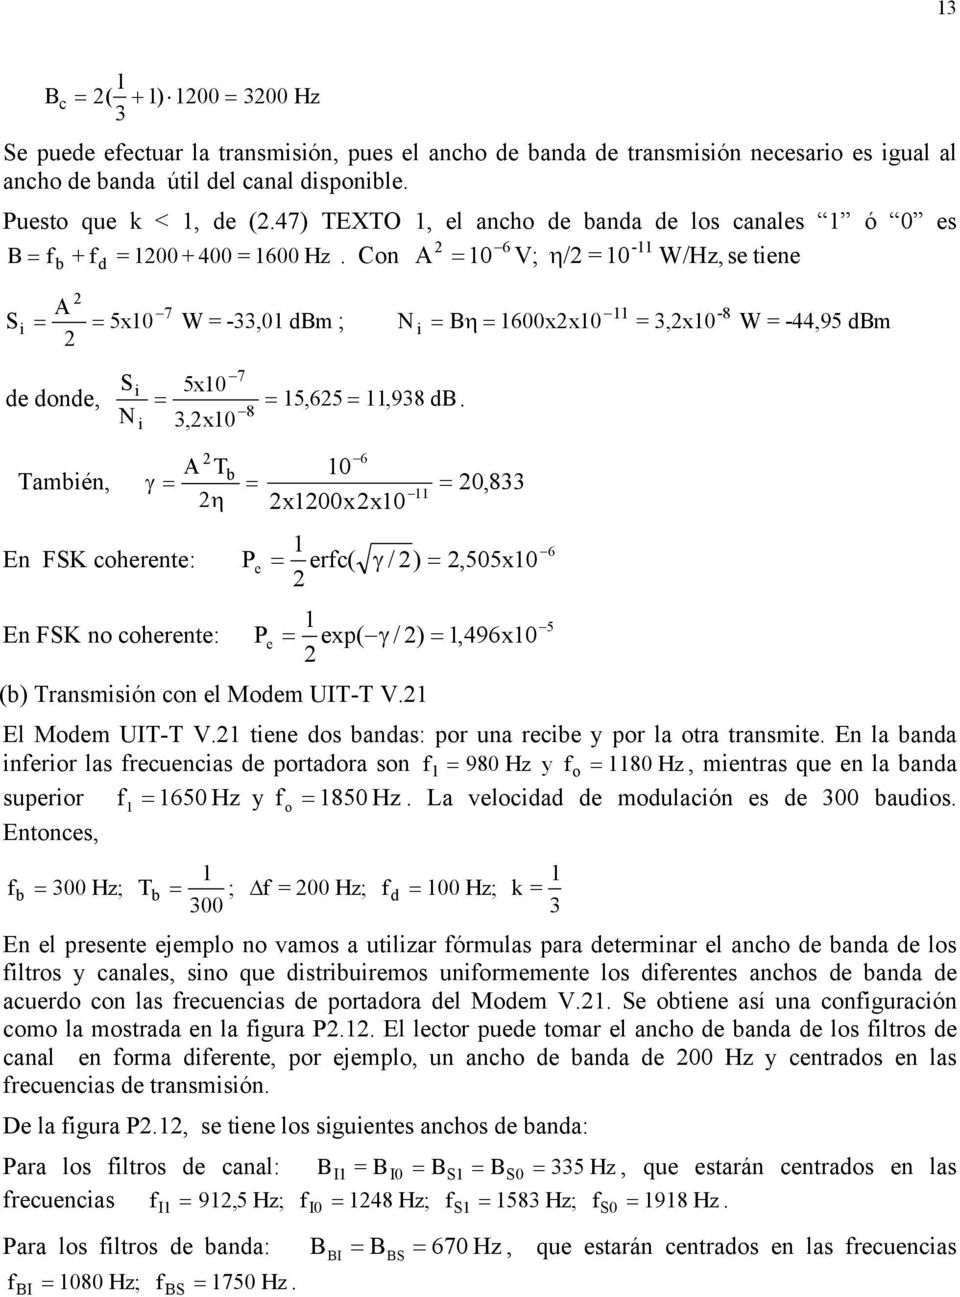 8 3, x Tabién, 6 T γ b η xxx,833 En FSK coherente: 6 Pe erfc( γ / ),55x En FSK no coherente: 5 Pe exp( γ / ),96x (b) Transisión con el Moe UIT-T V. El Moe UIT-T V.